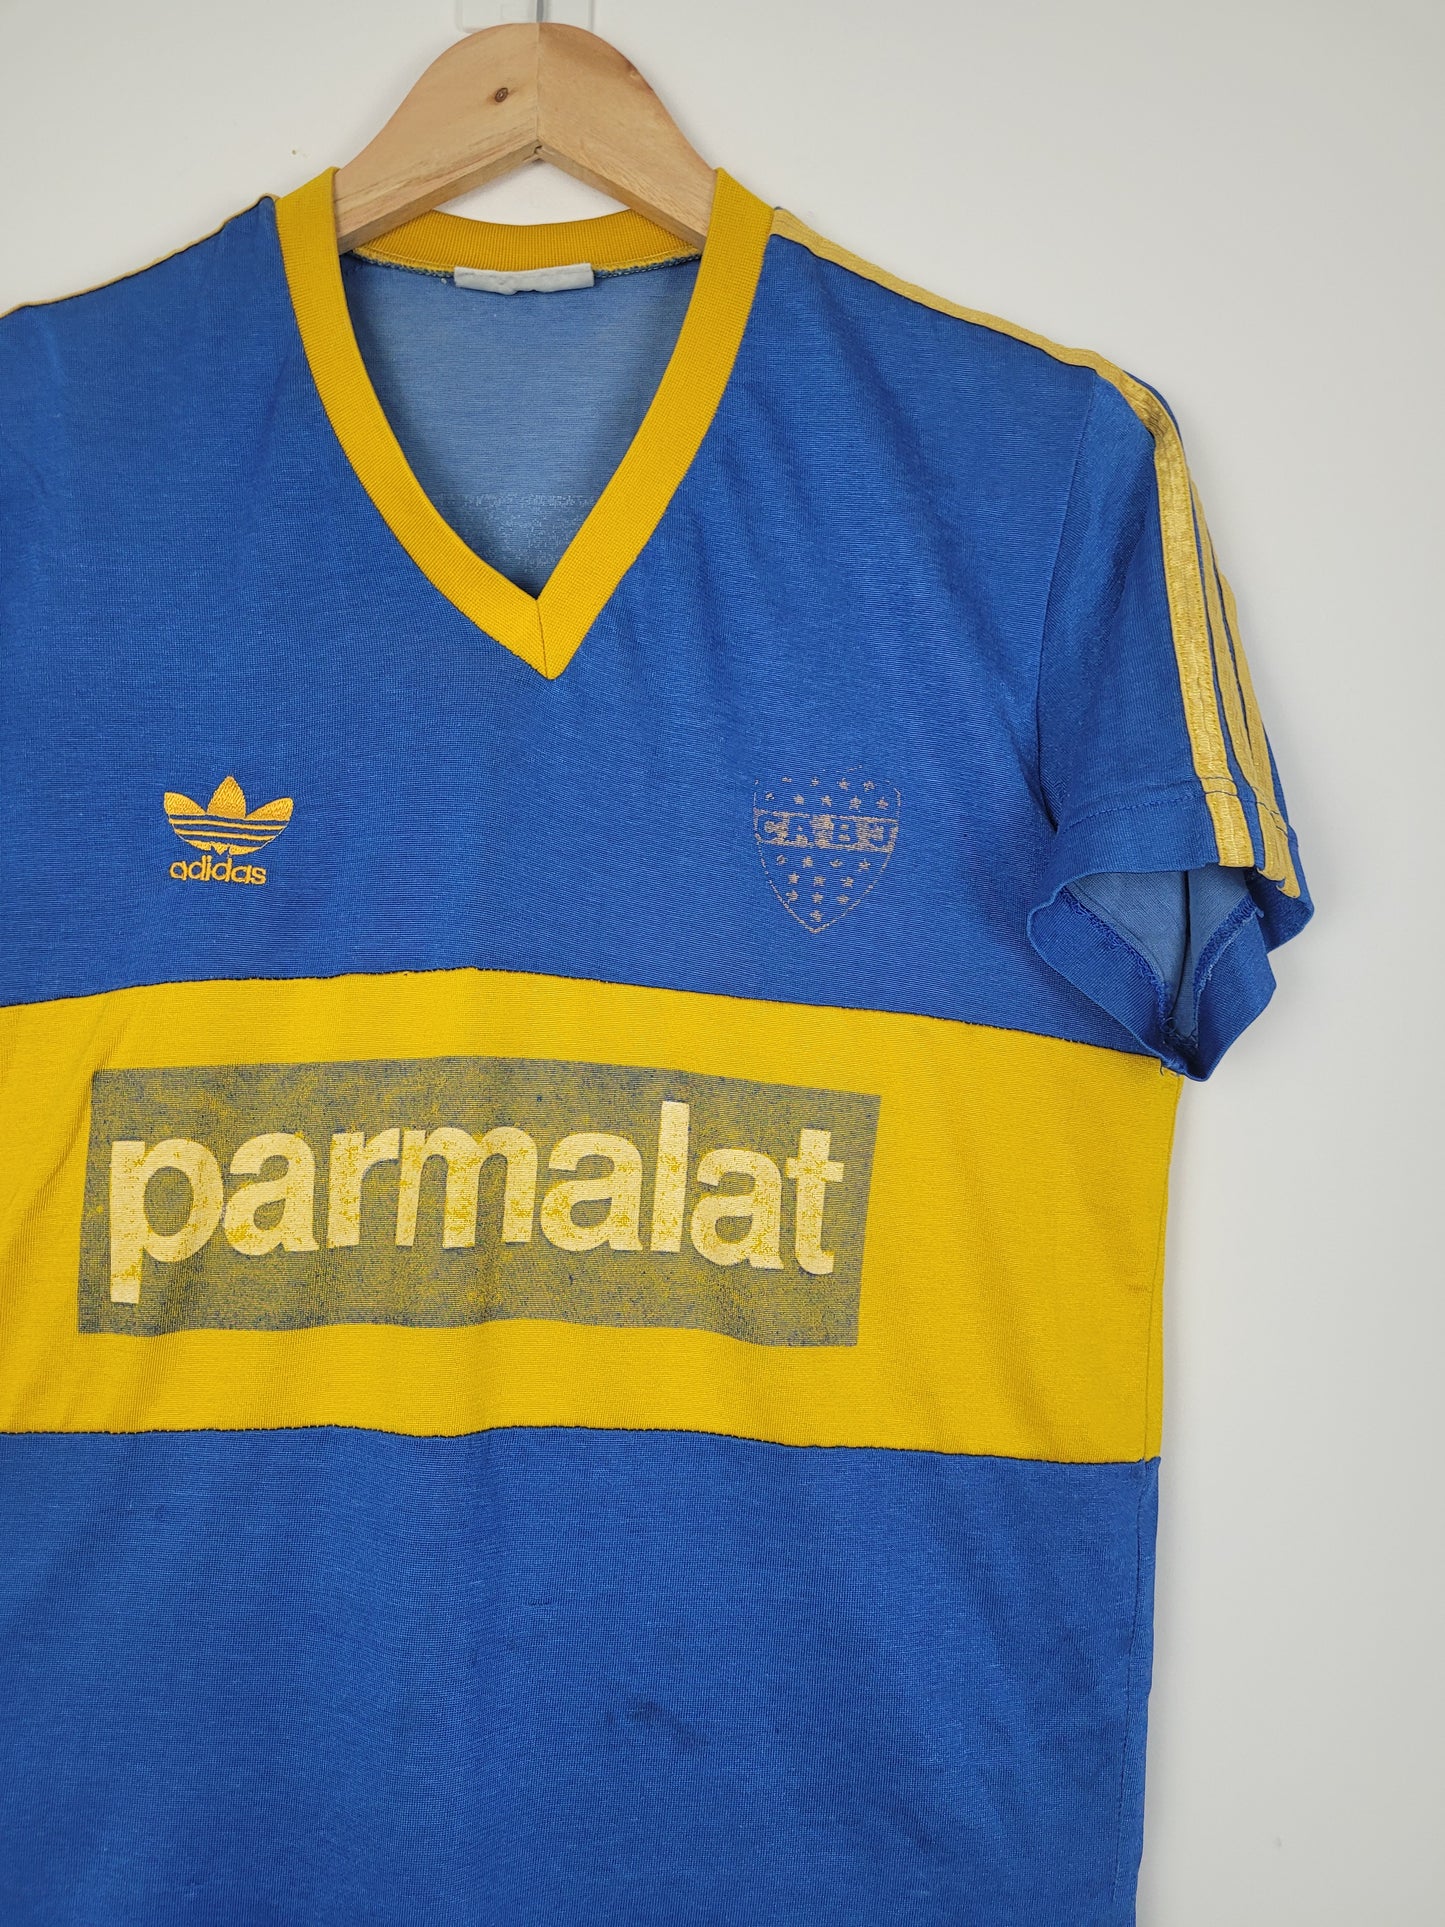 
                  
                    Original Boca Juniors Home Jersey 1992-1993 - M
                  
                